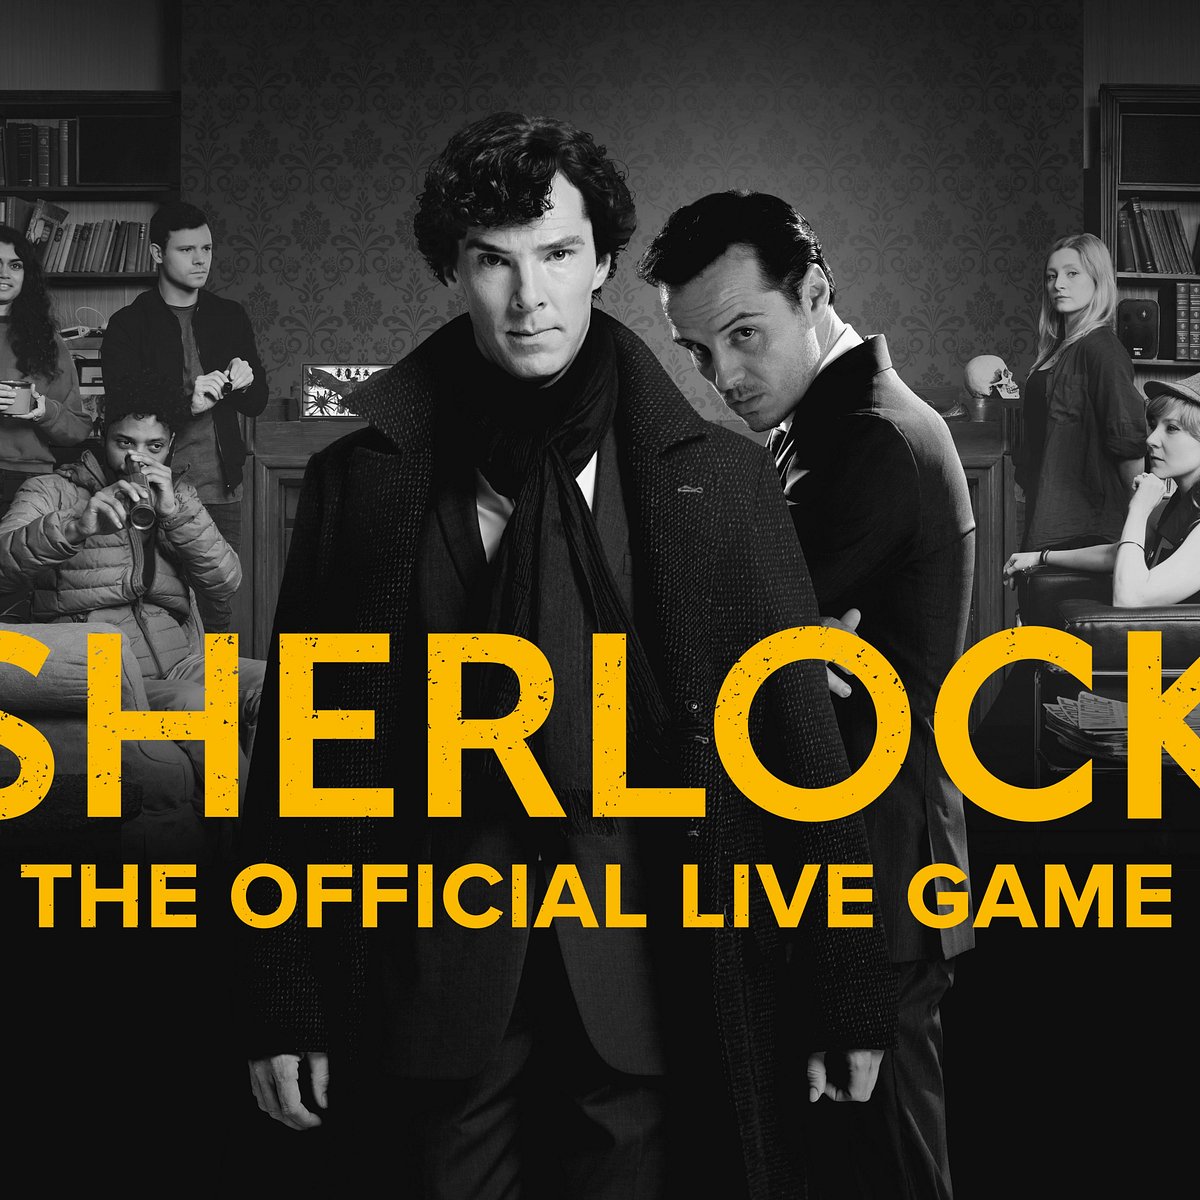 Sherlock The Official Live Game Londres Ce Qu Il Faut Savoir